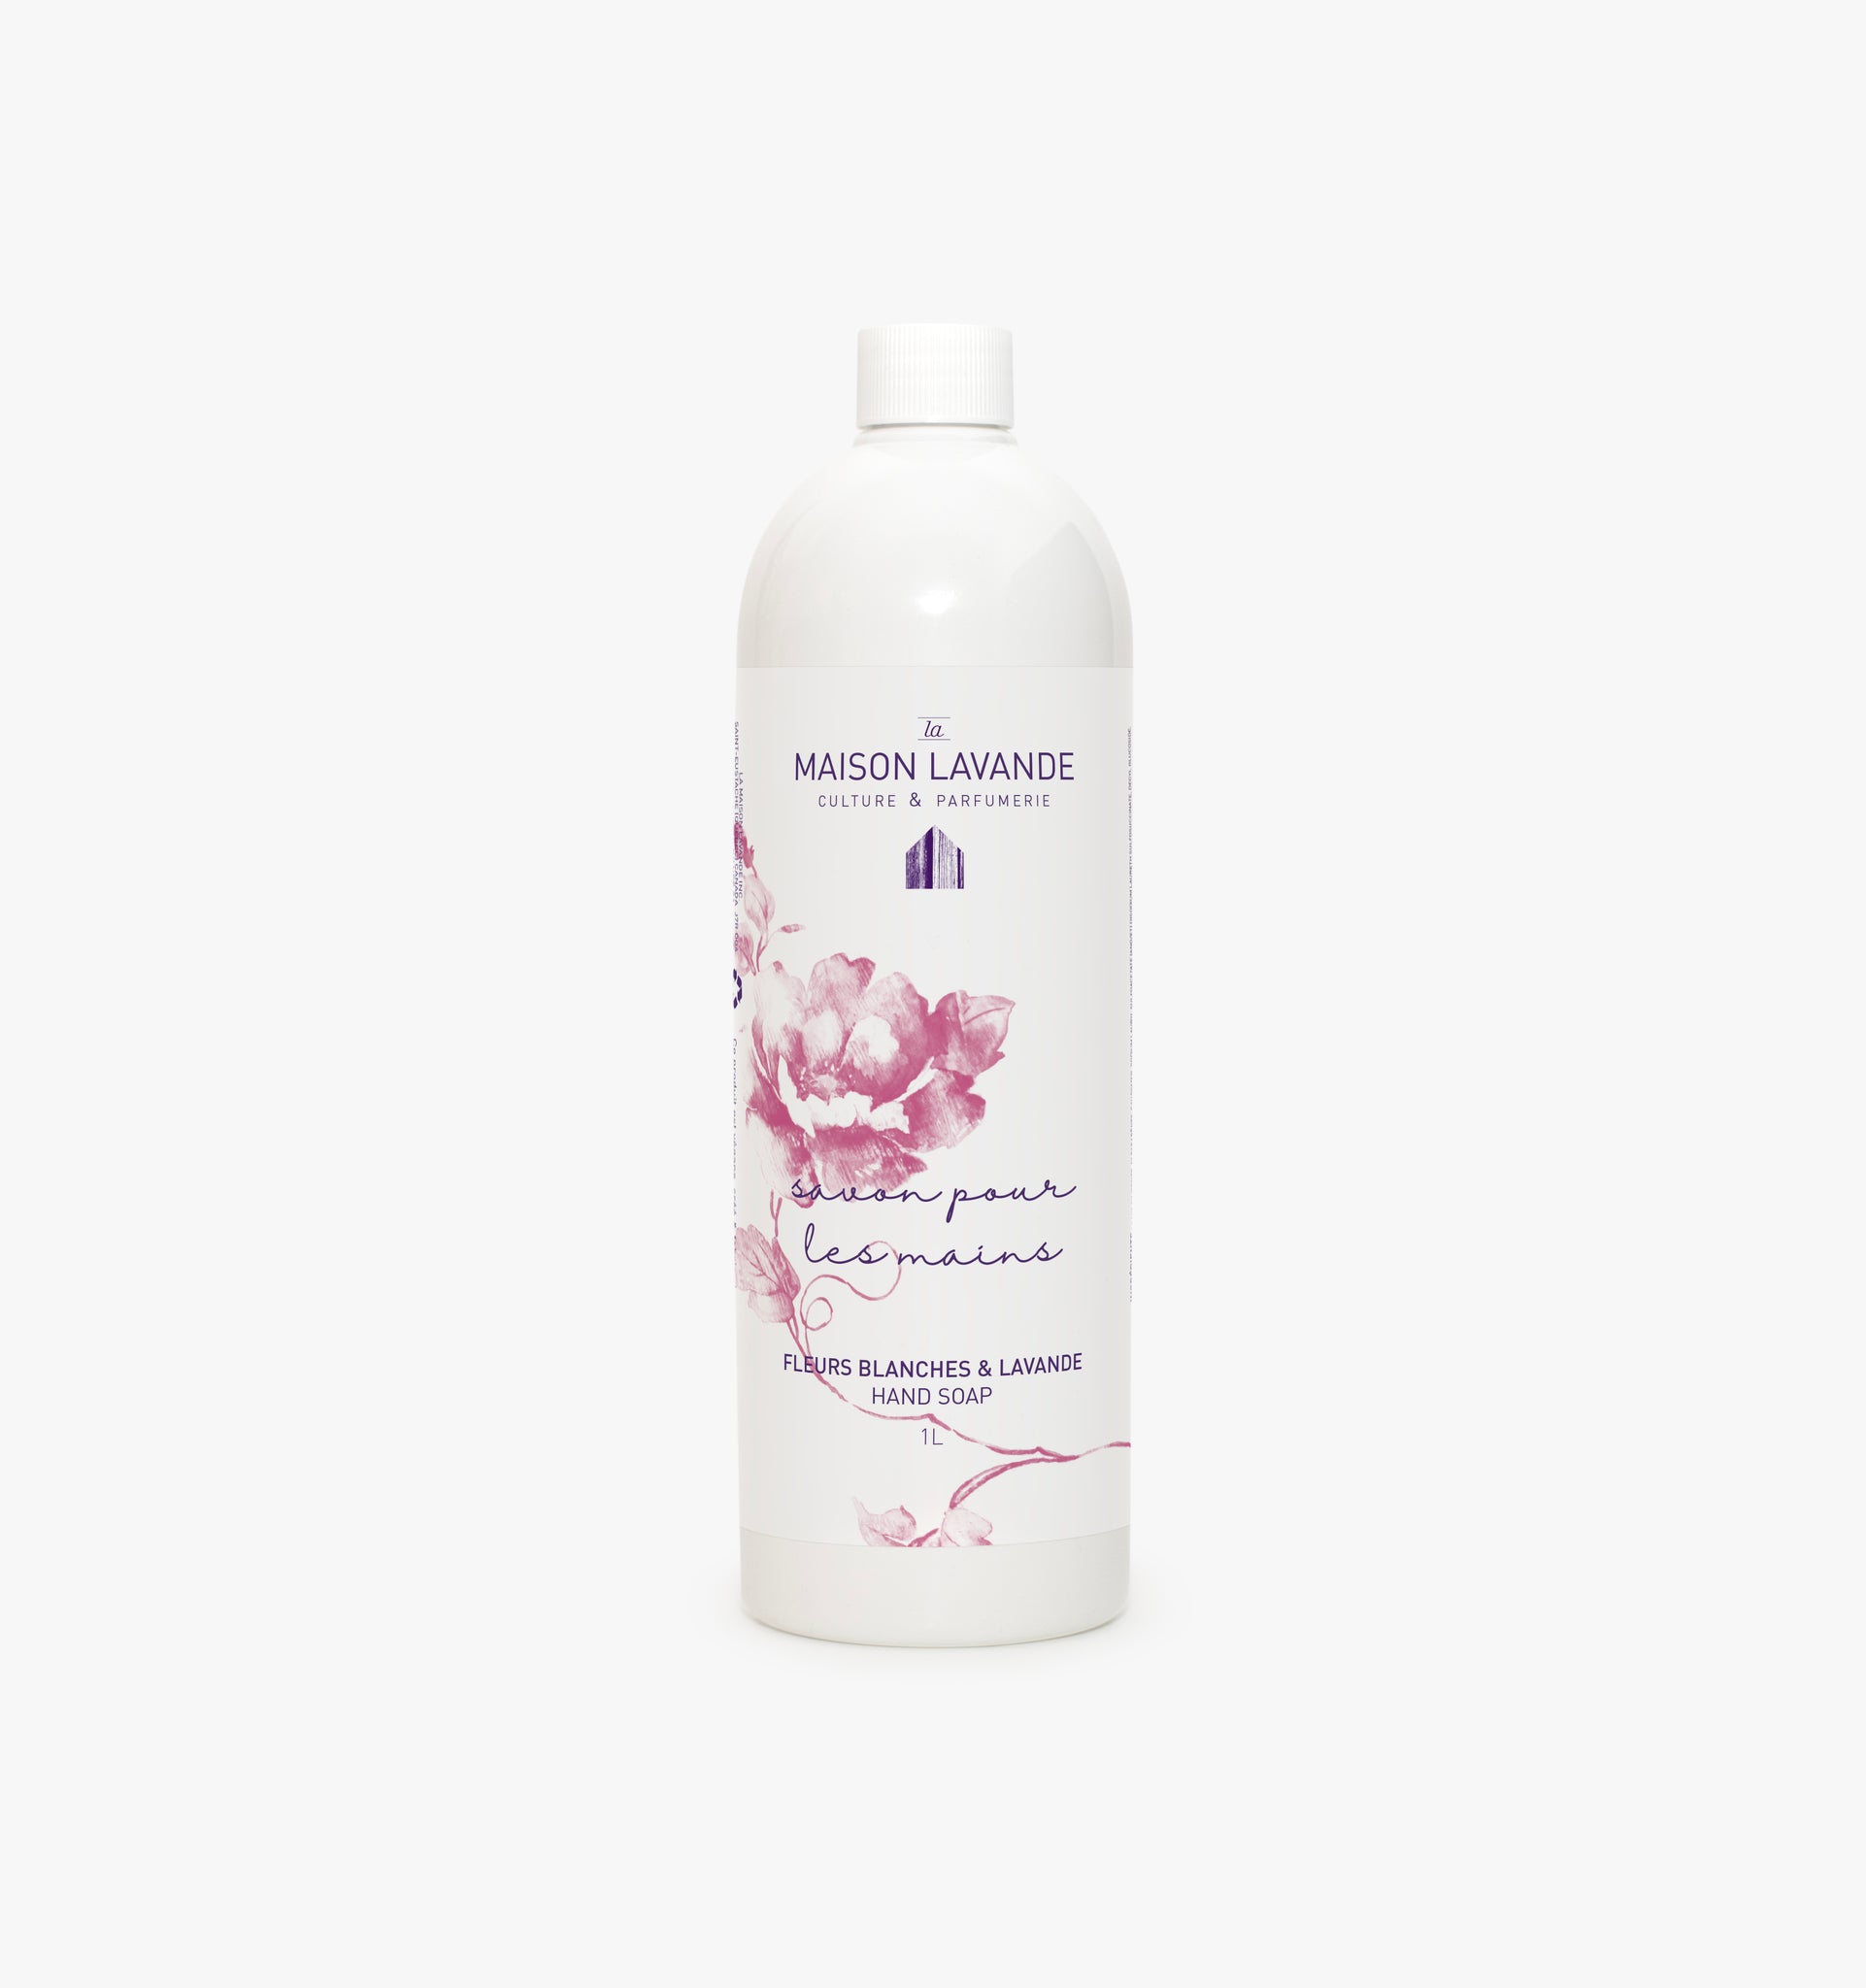 Savon pour les mains - Fleurs blanches & lavande ||Hand gel soap - White Flowers & Lavender